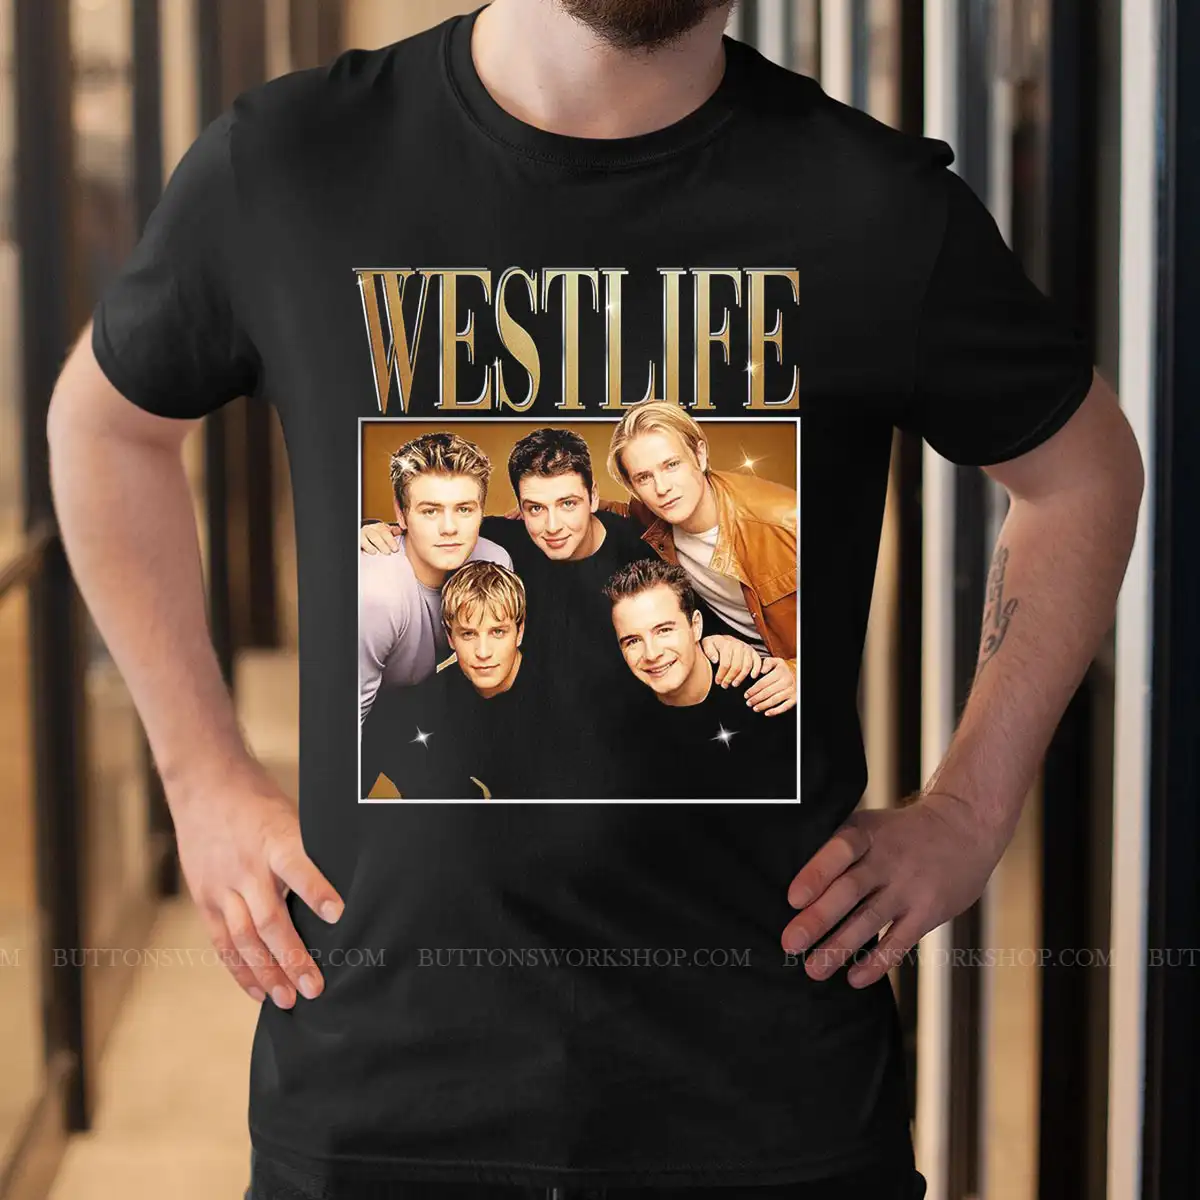 Kyst Smadre Presenter Westlife T Shirt Unisex Tshirt - buttonsworkshop.com